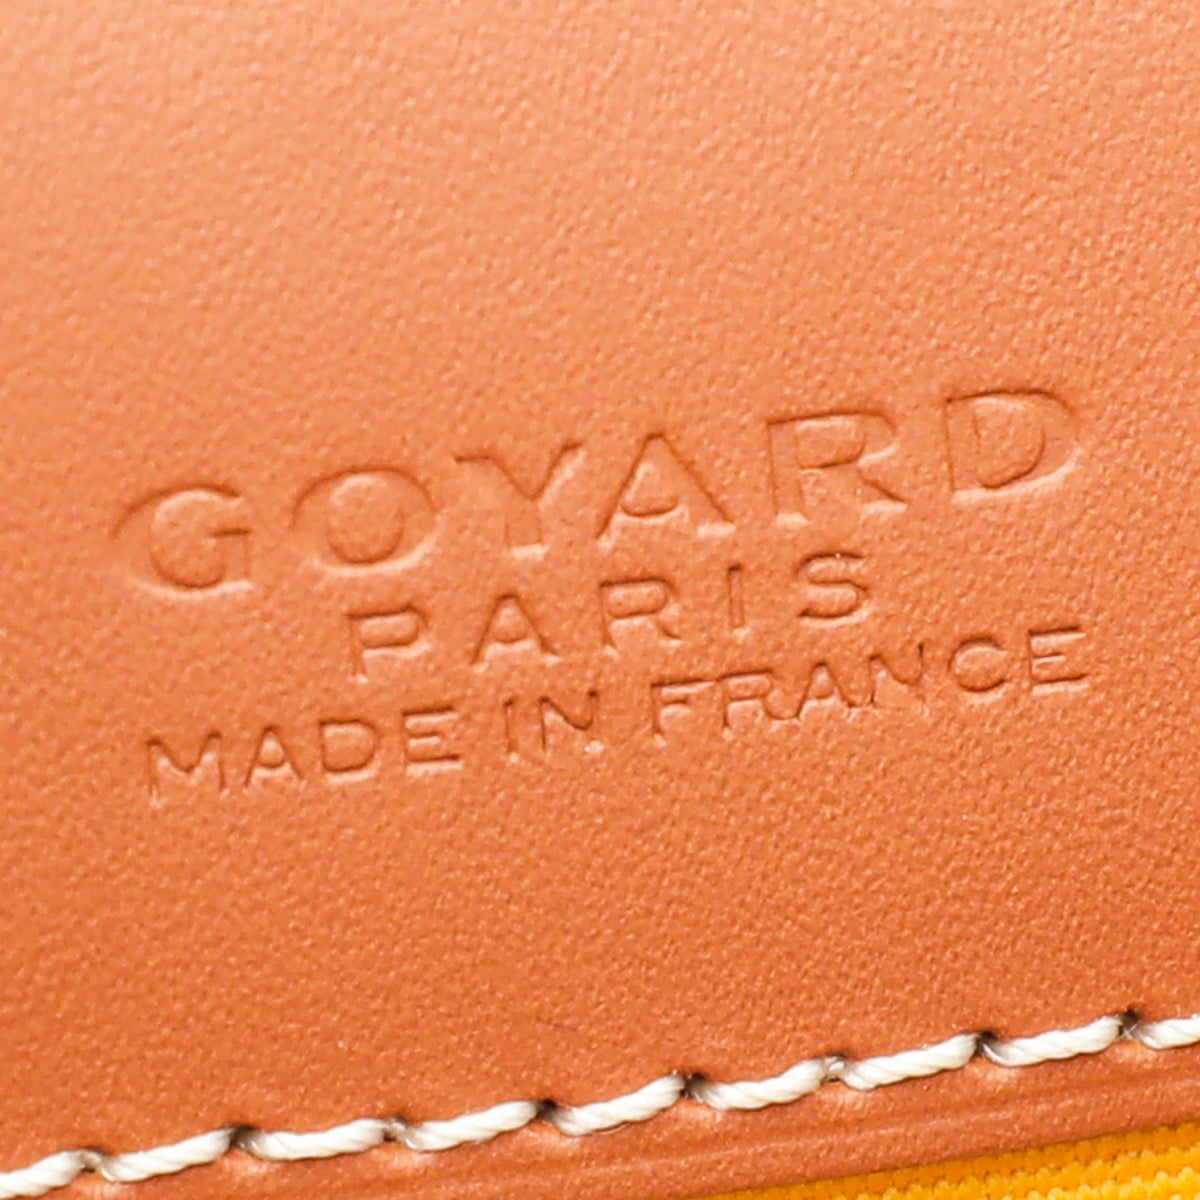 Goyard Green Goyardine Belvedere II MM Messenger Bag – Jadore Couture